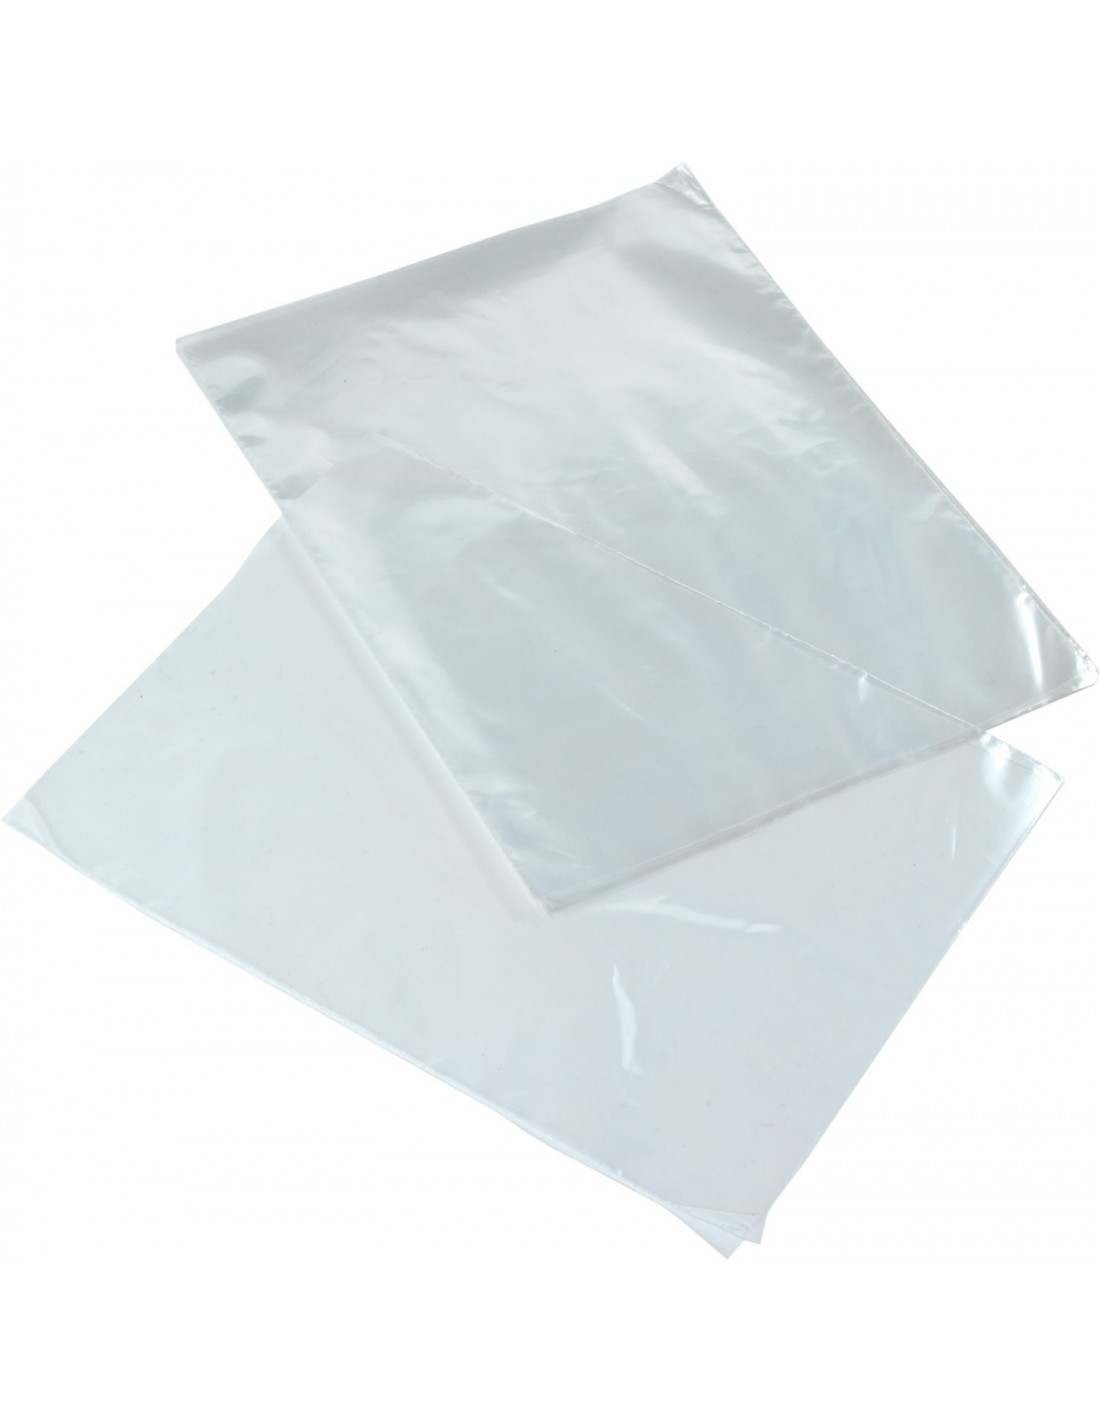 Bolsas de Polietileno sin Cierre Transparentes de 20 x 30 cm